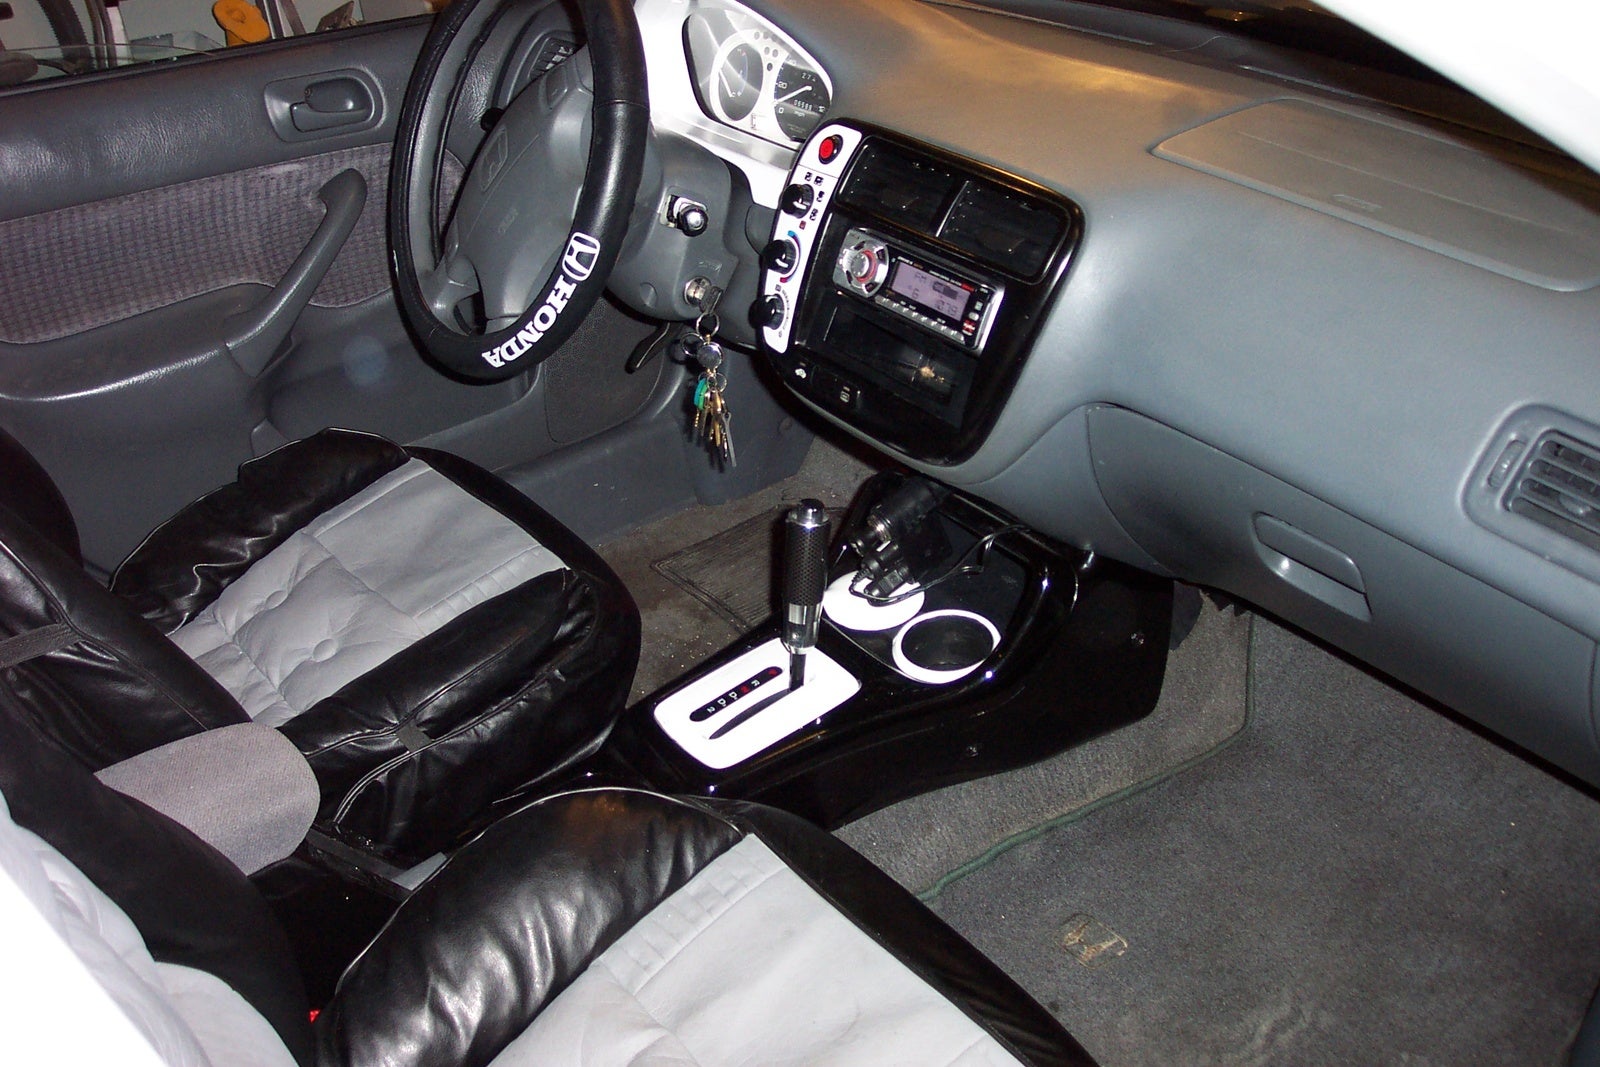 Honda Civic Ex 2000 Interior